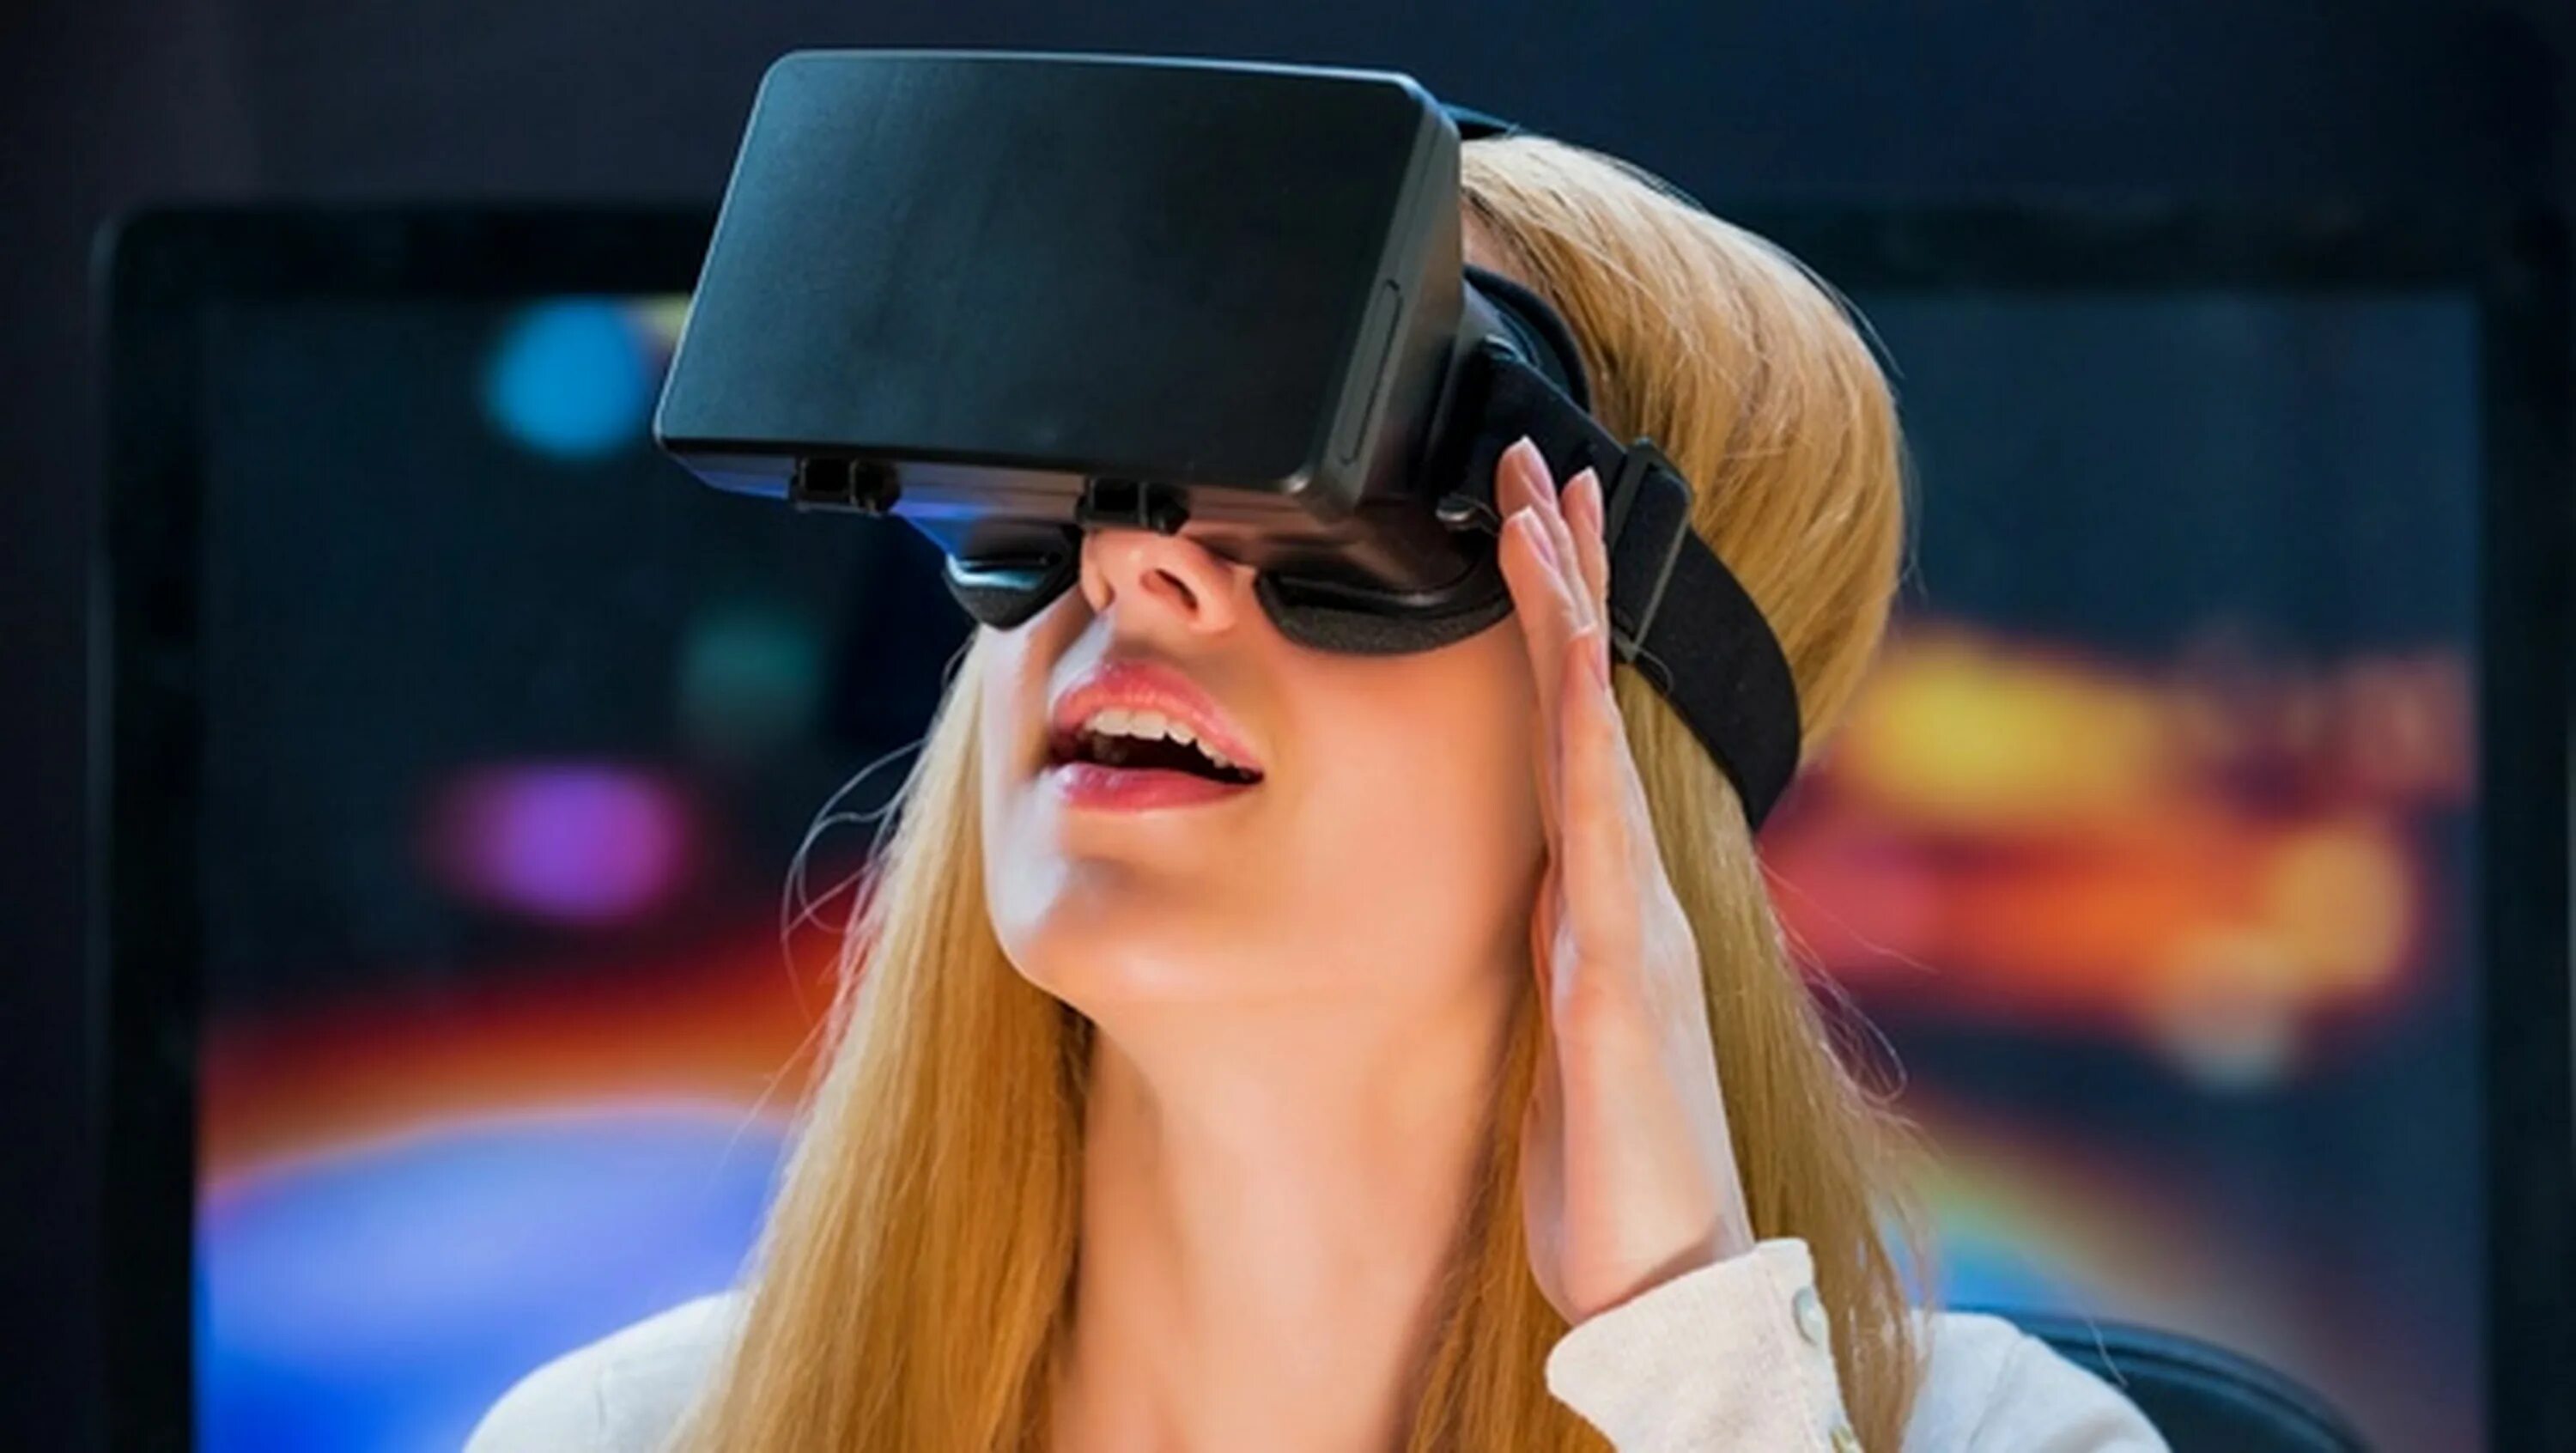 Виар очки реальности. Виртуальная реальность (Virtual reality, VR). Девушка в очках виртуальной реальности. Девушка в ВР очках. Виар очки девушка.